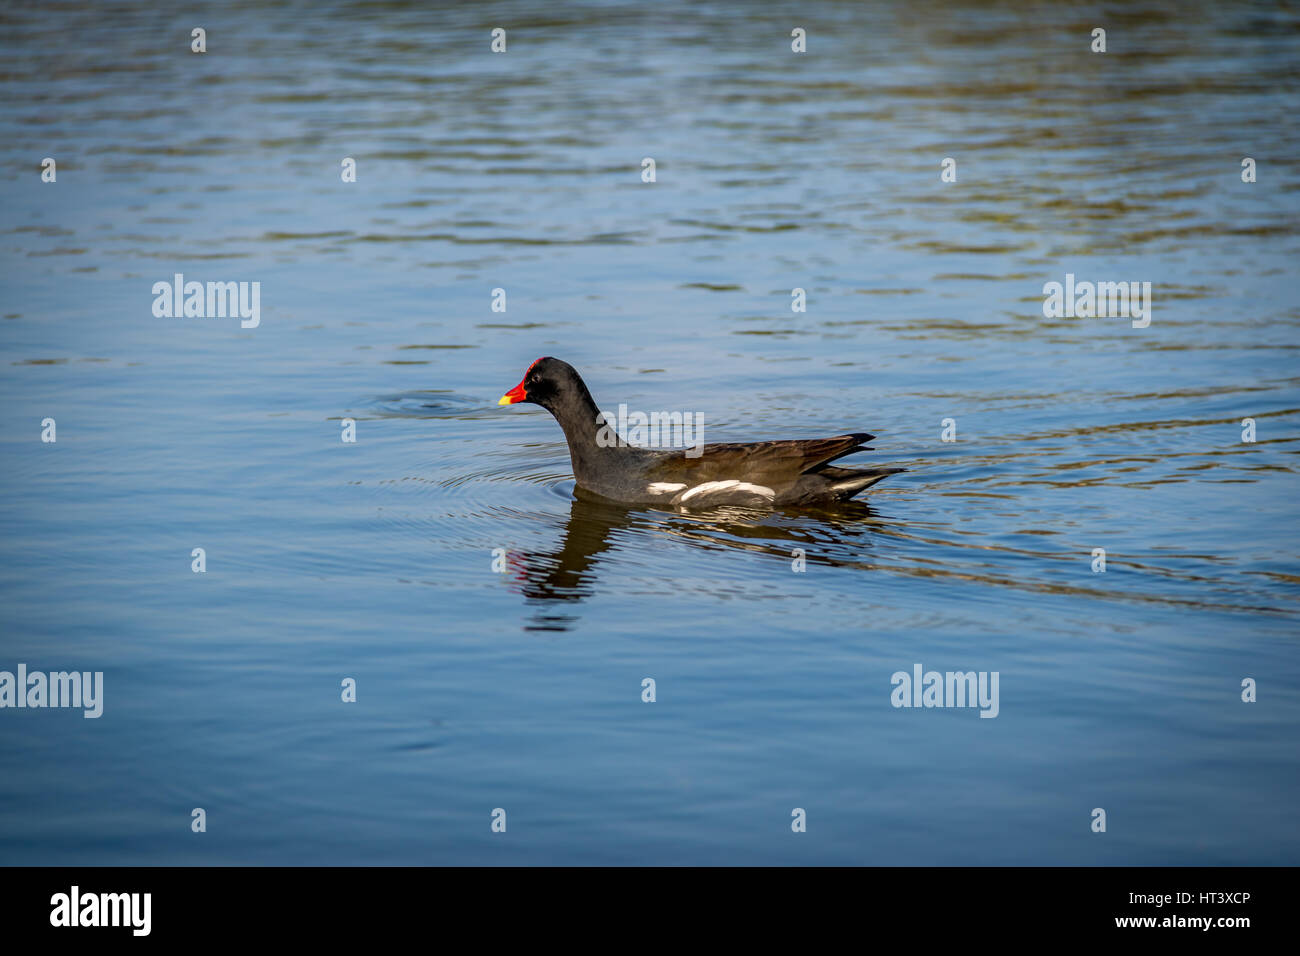 Moorhen o marsh hen (Gallinula chloropus) nuoto su un lago - black bird con il rosso e il becco giallo Foto Stock